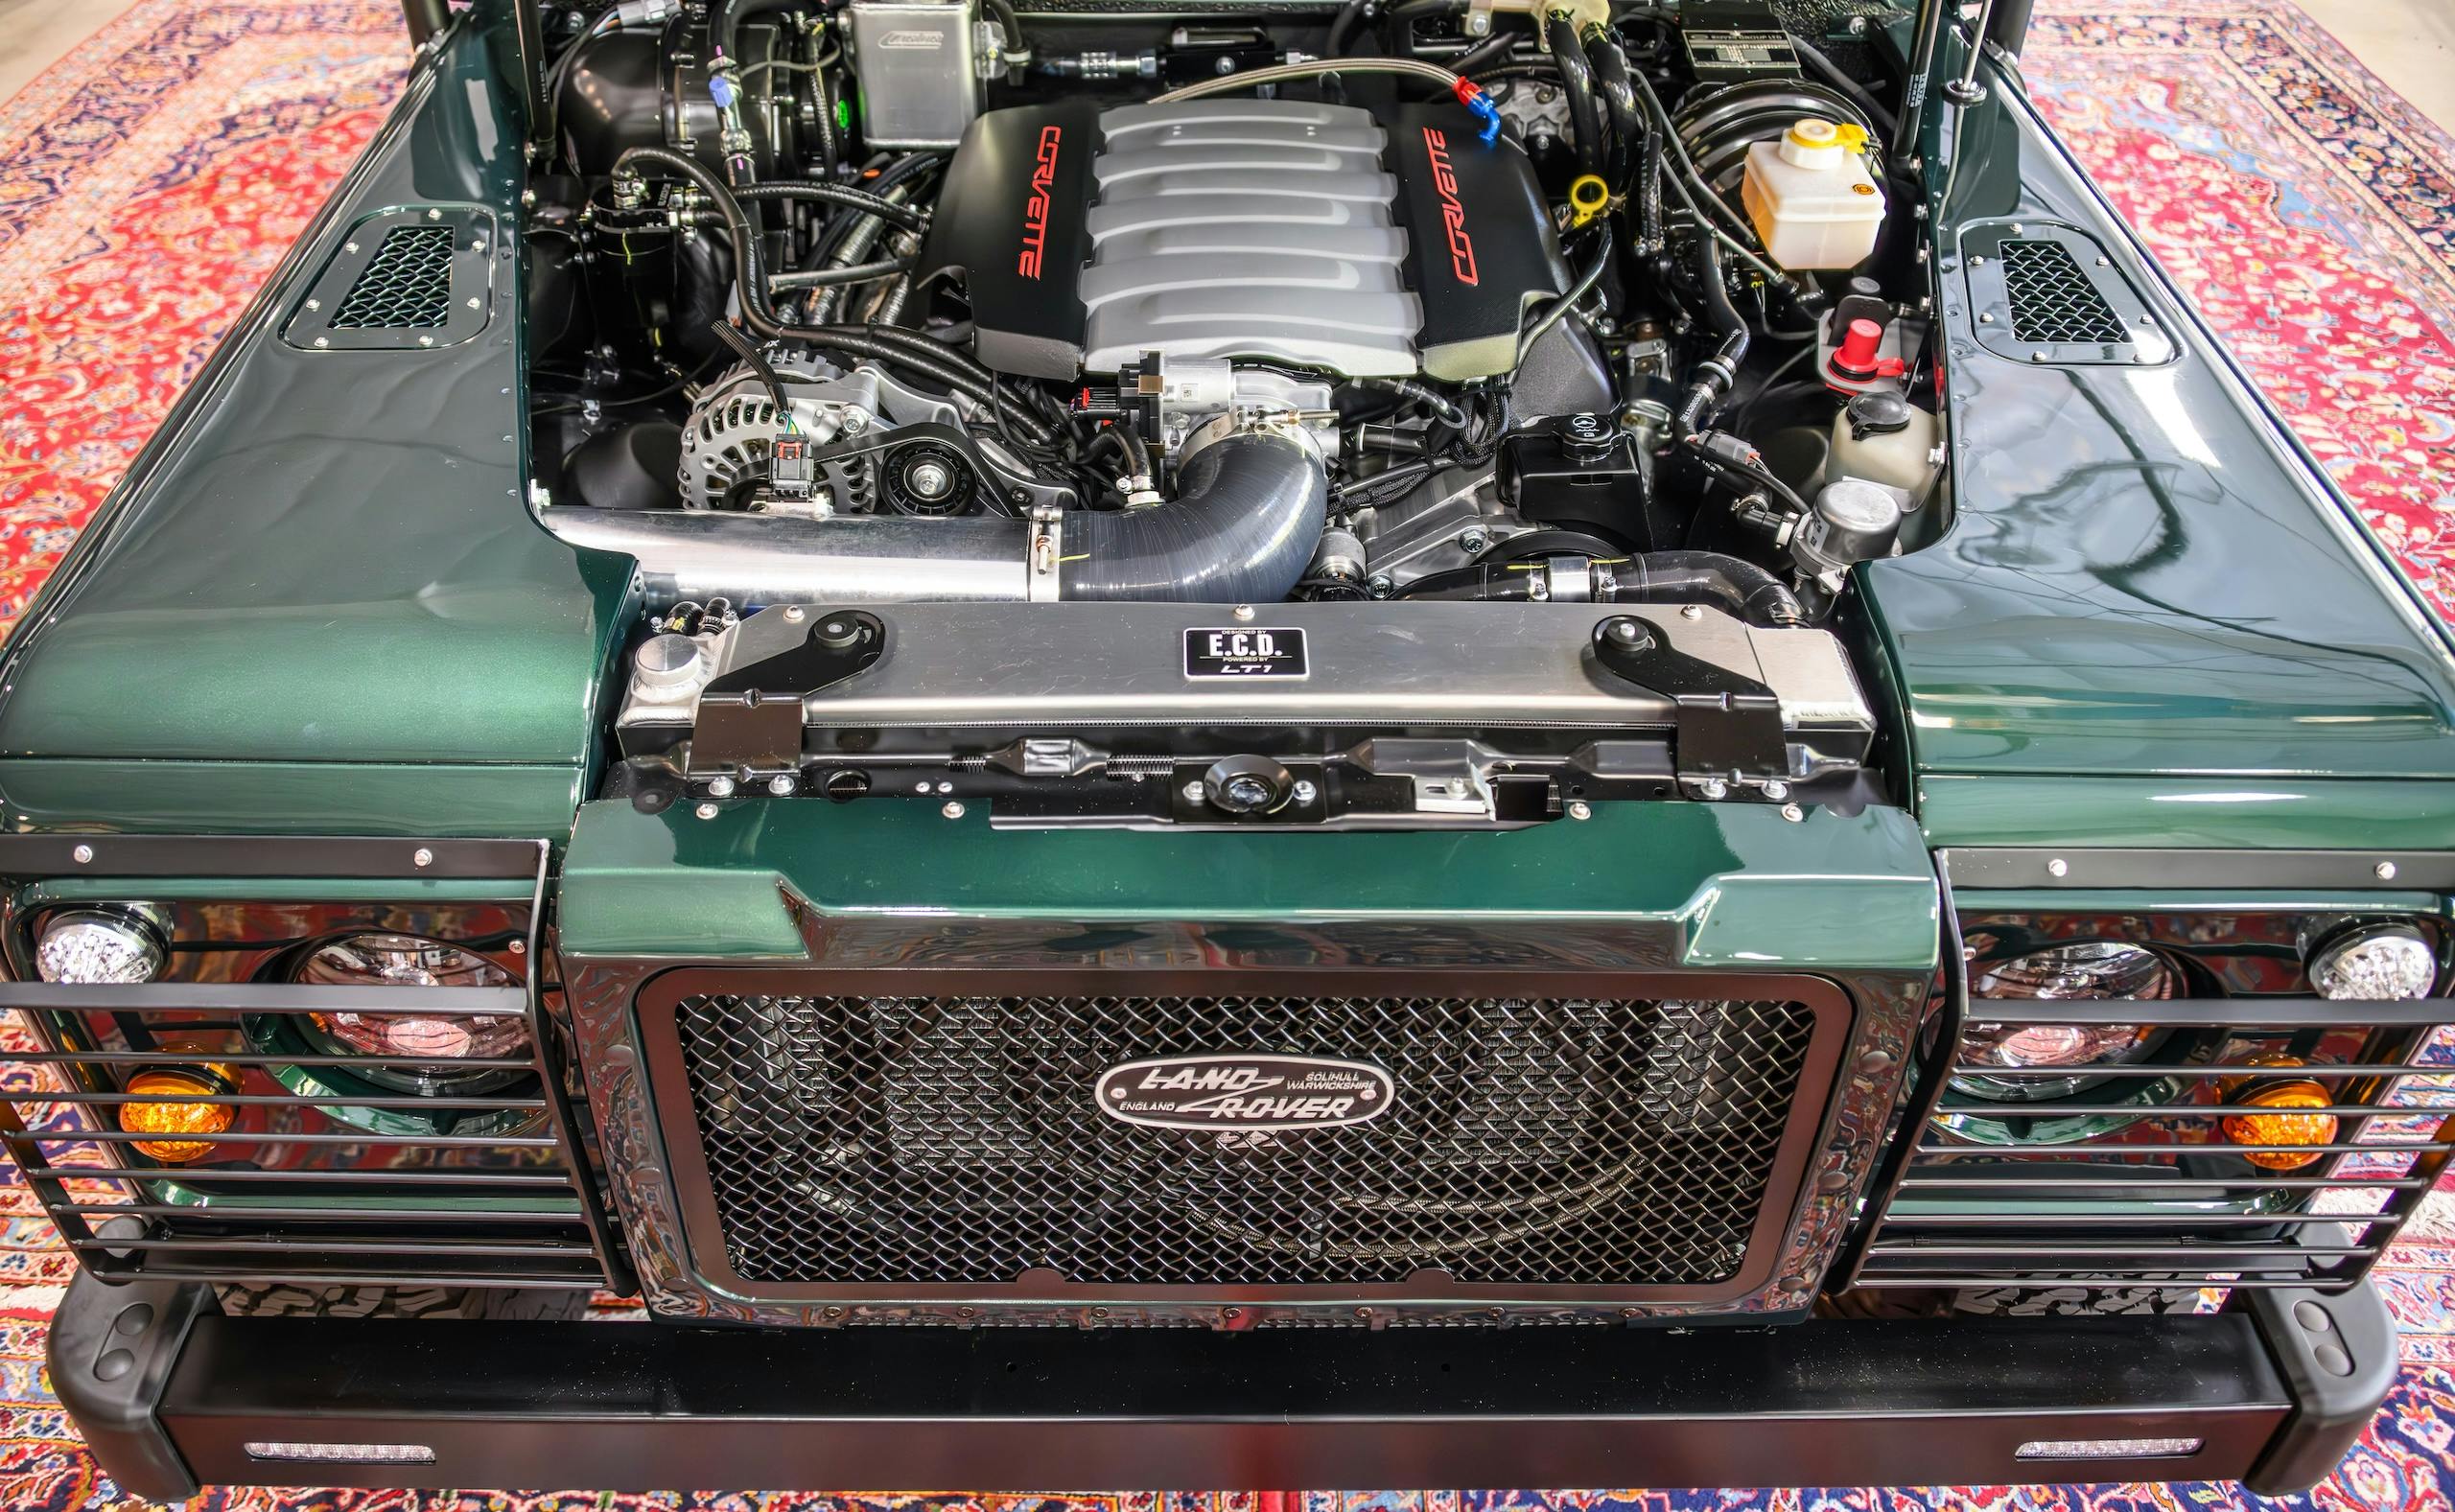 ECD Custom Range Rover Corvette engine bay full